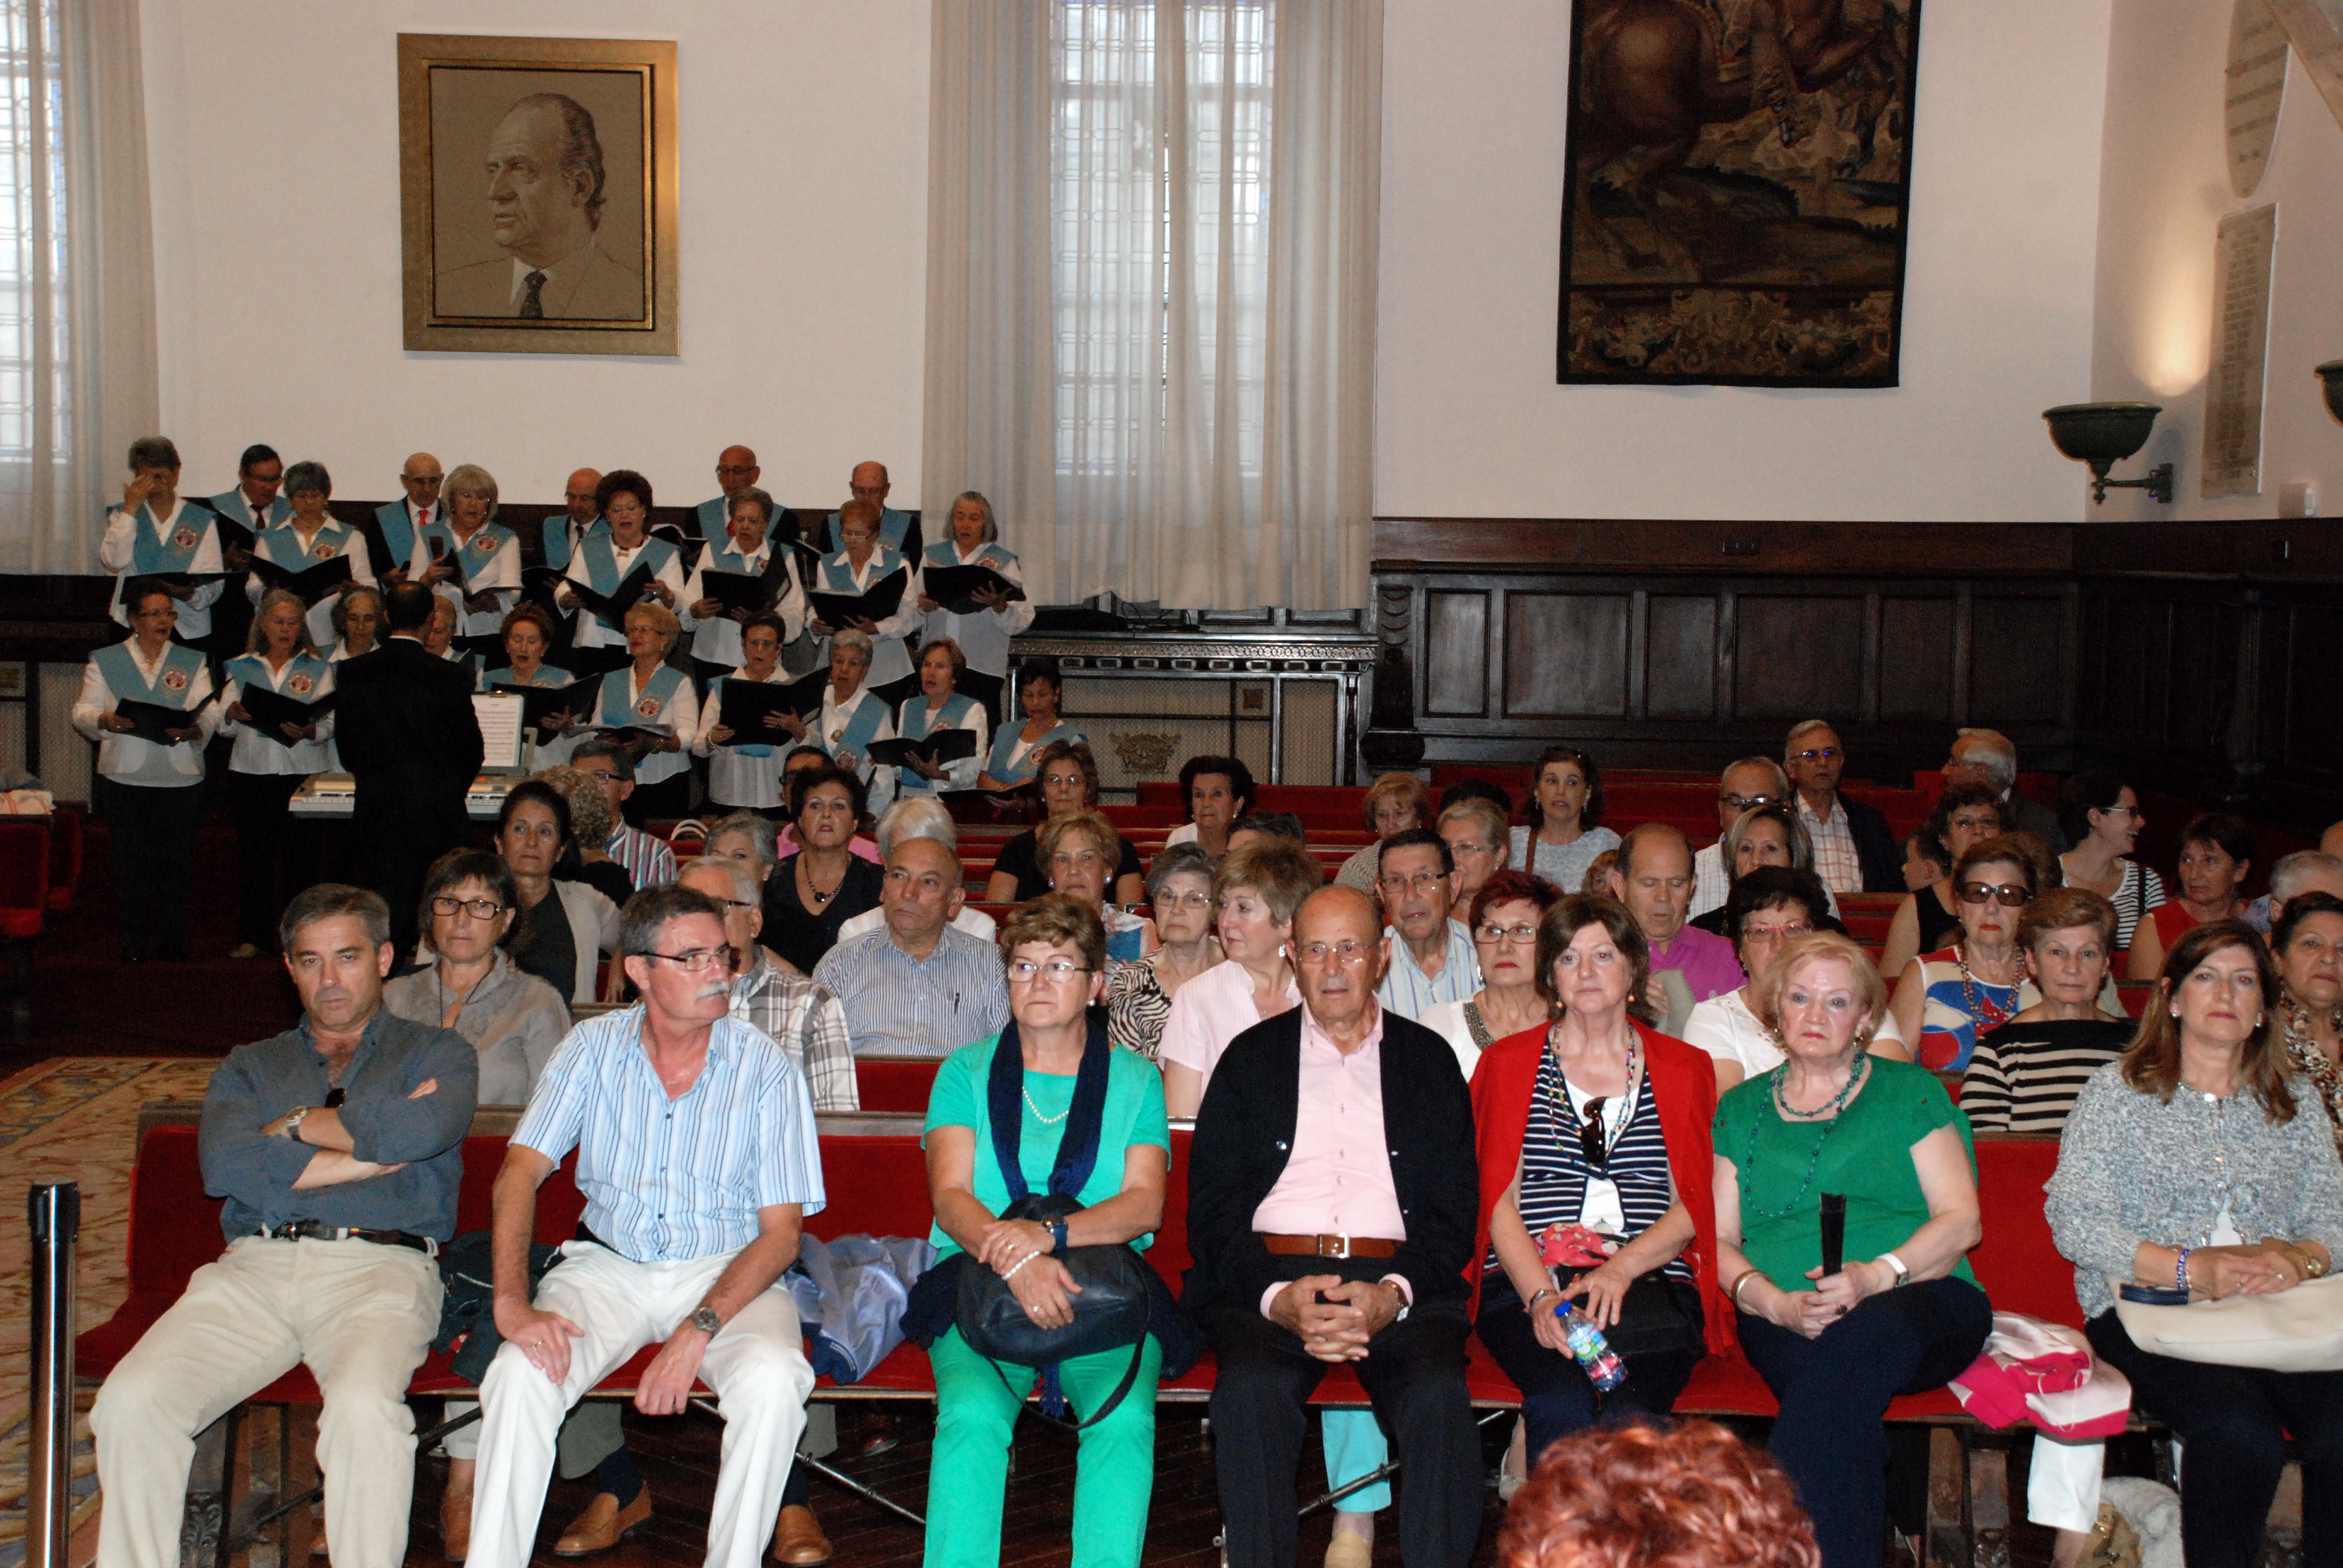 Cerca de 400 alumnos mayores de 55 años se han inscrito en el Programa Interuniversitario de la Experiencia en la sede la Salamanca para el curso académico 2014-2015